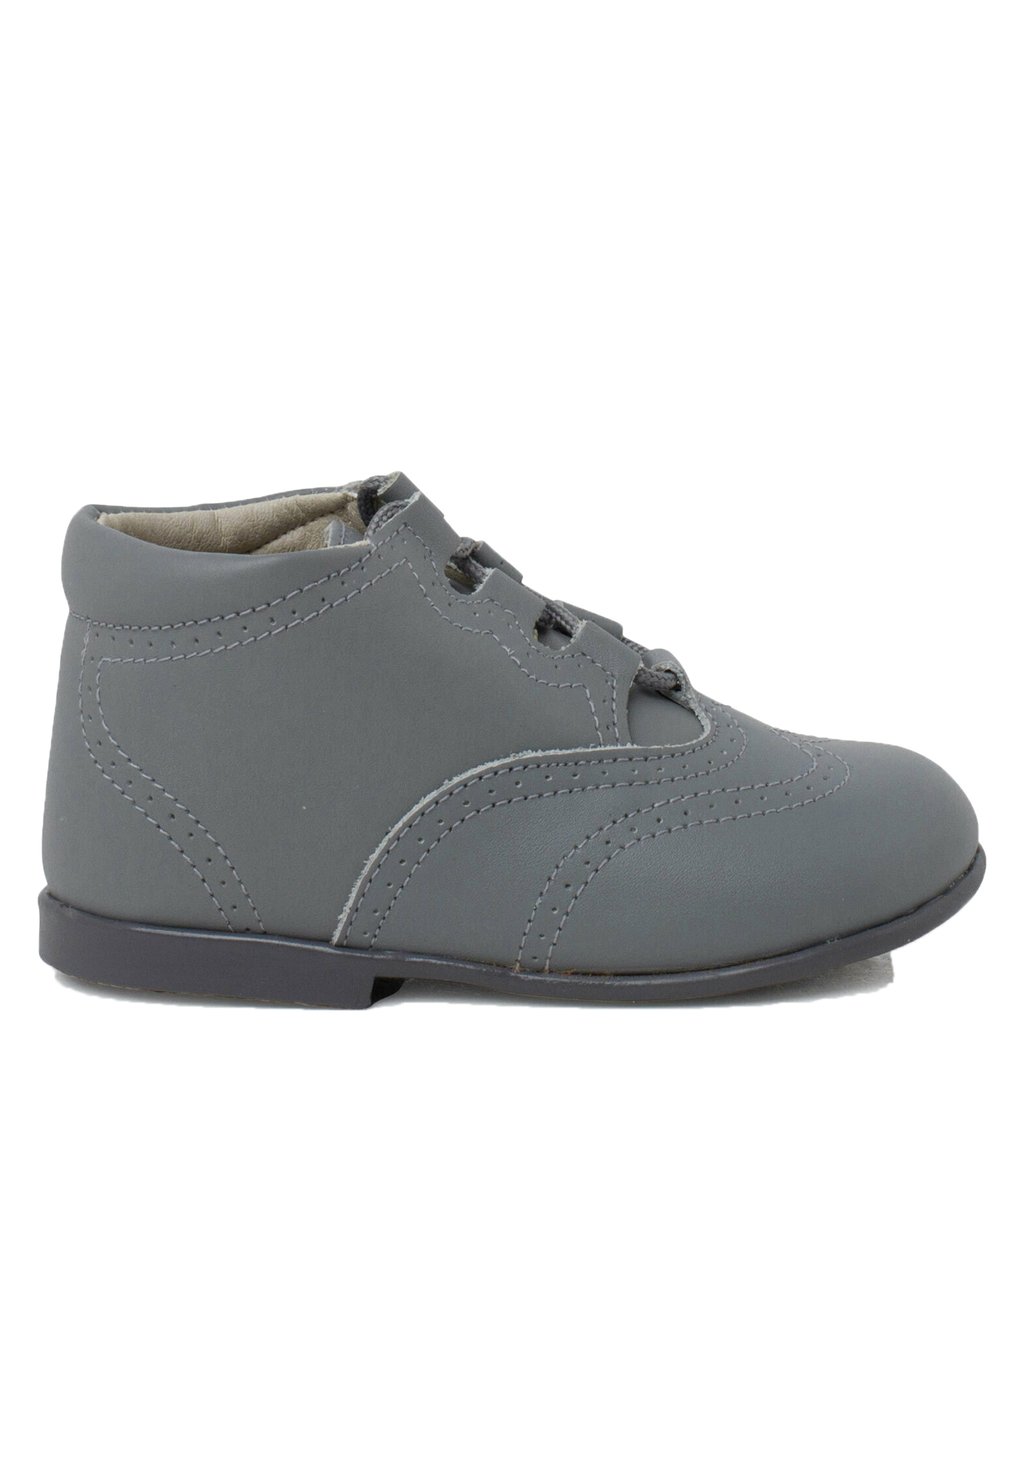 Обувь для обучения INGLESITO Pisamonas, цвет gris claro